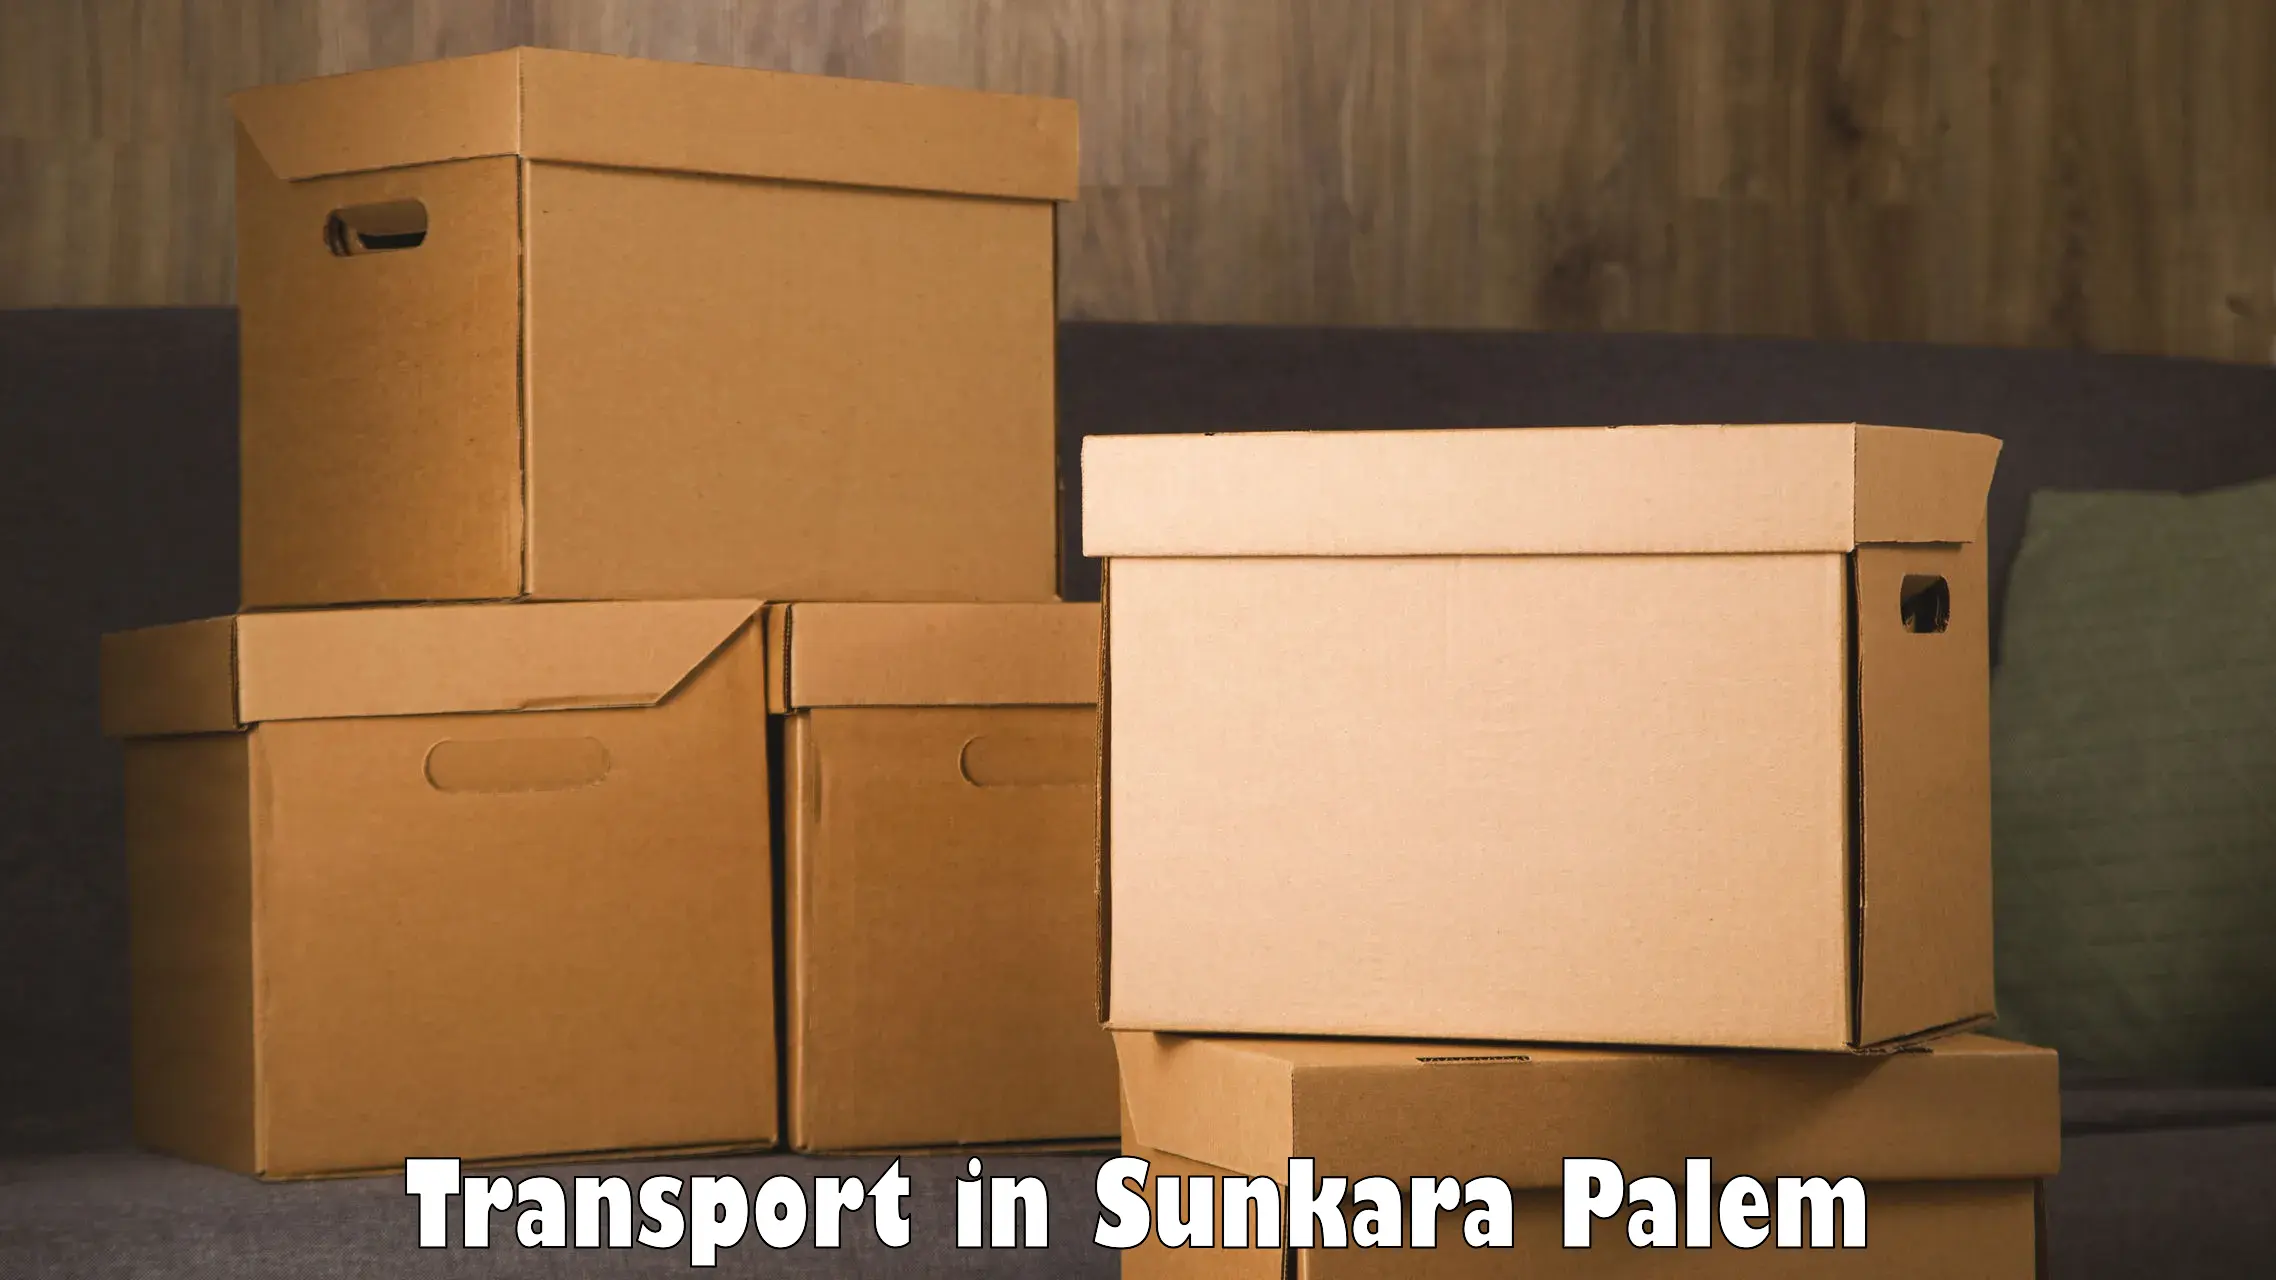 Parcel transport services in Sunkara Palem